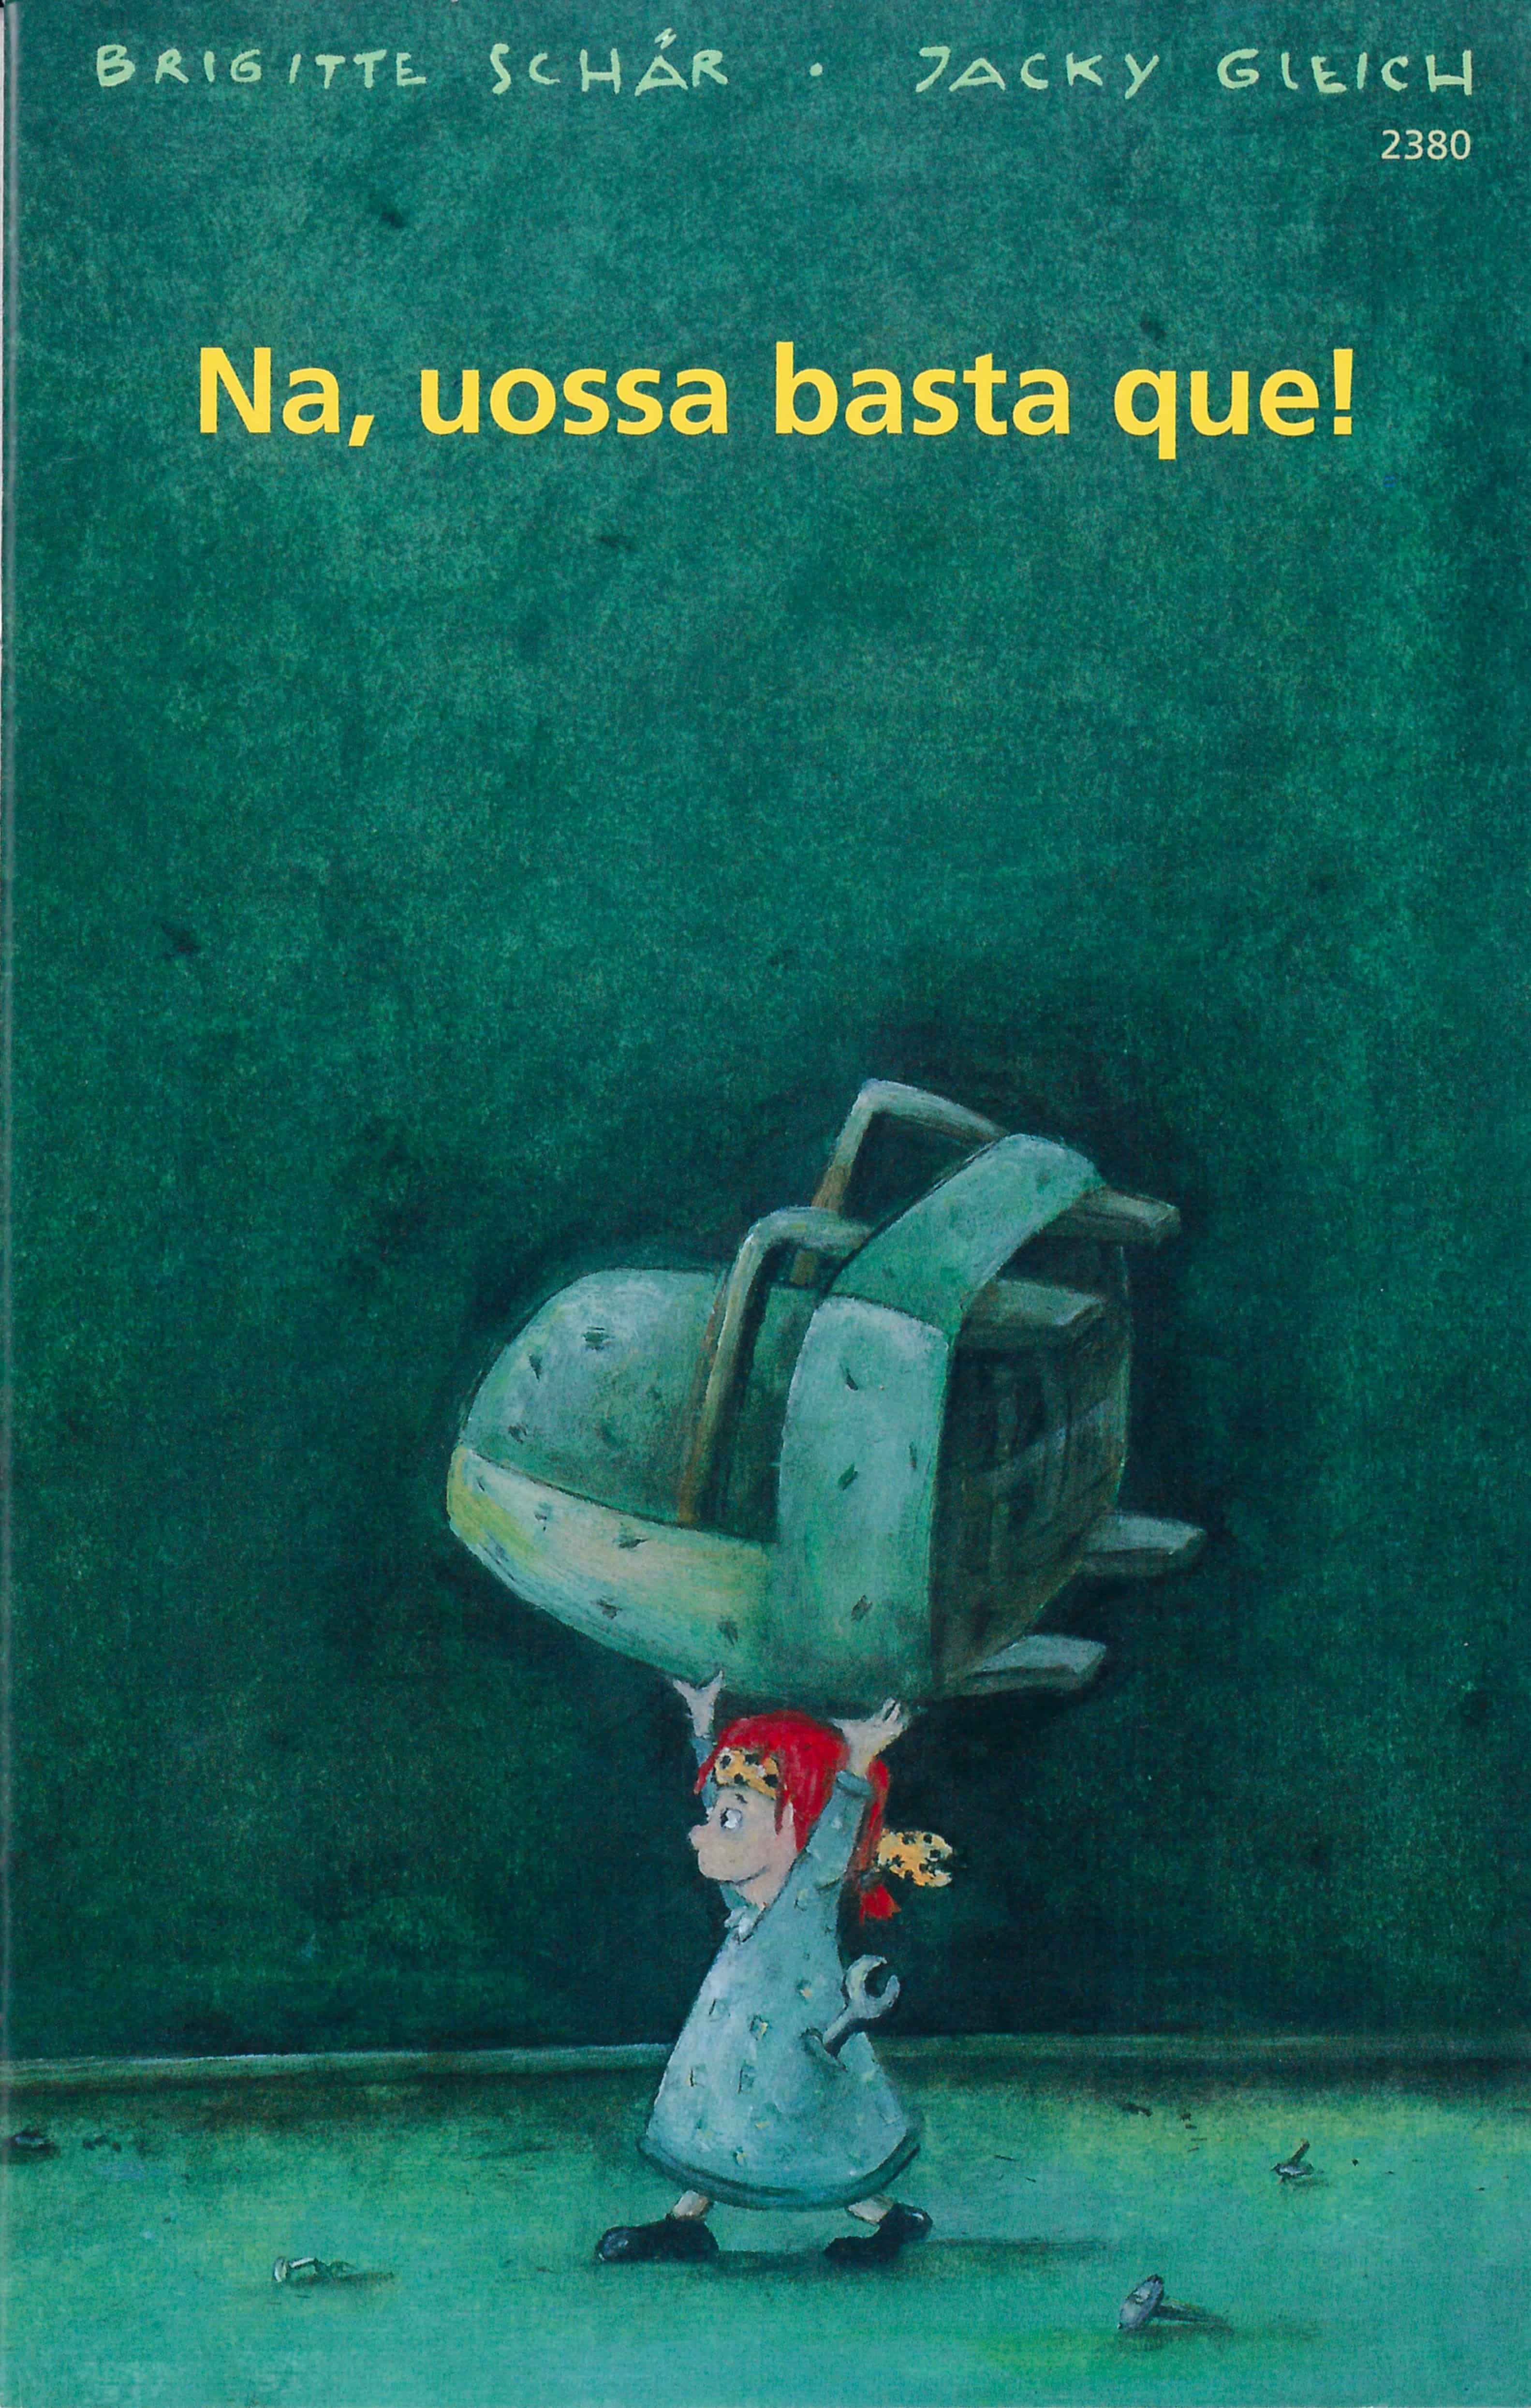 Na, uossa basta que!, ein Kinderbuch von Brigitte Schaer, Illustration von Jacky Gleich, SJW Verlag, Weihnachtsgeschichte